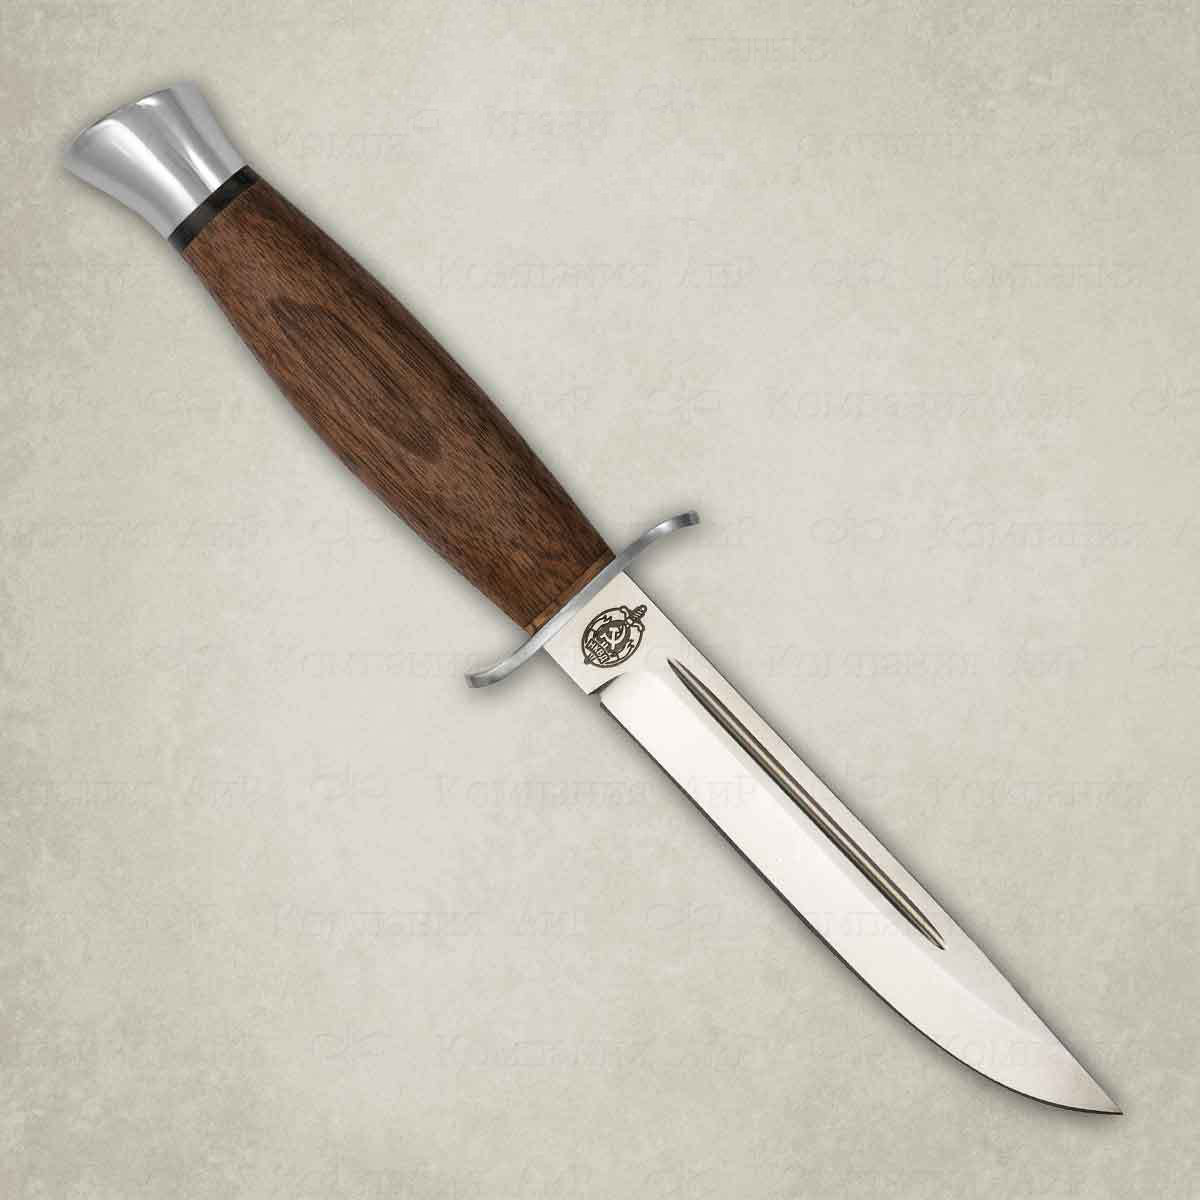 Нож АиР Финка-2, сталь M390, рукоять дерево